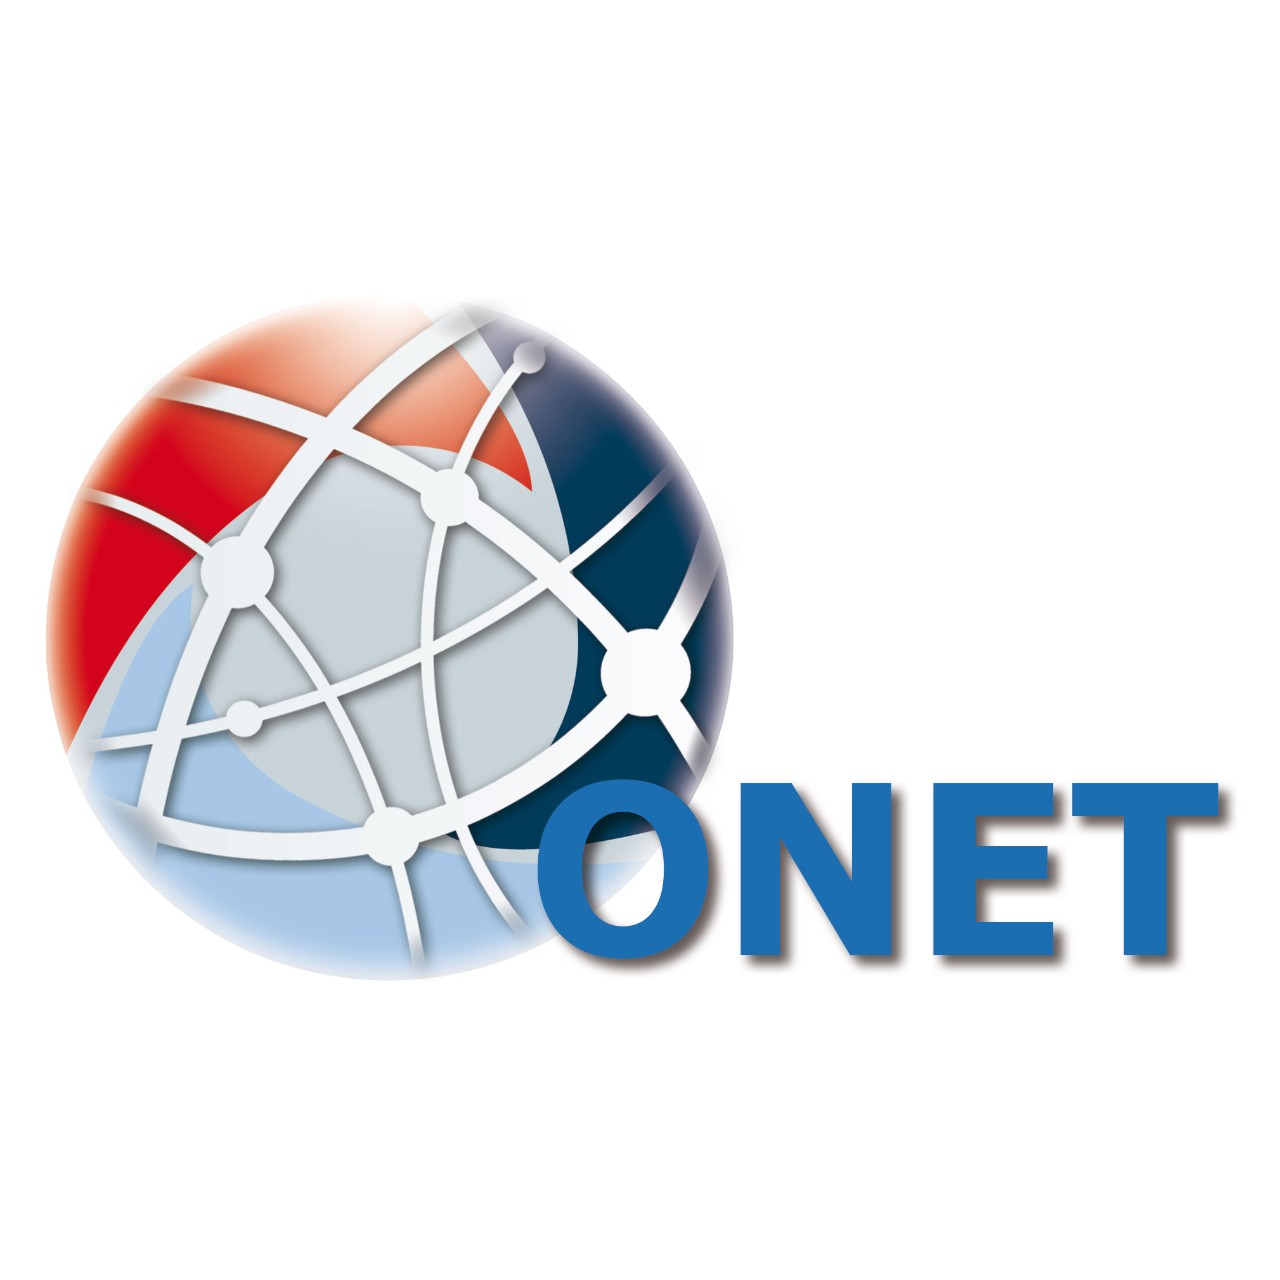 ONET ネットワークソフトウェア